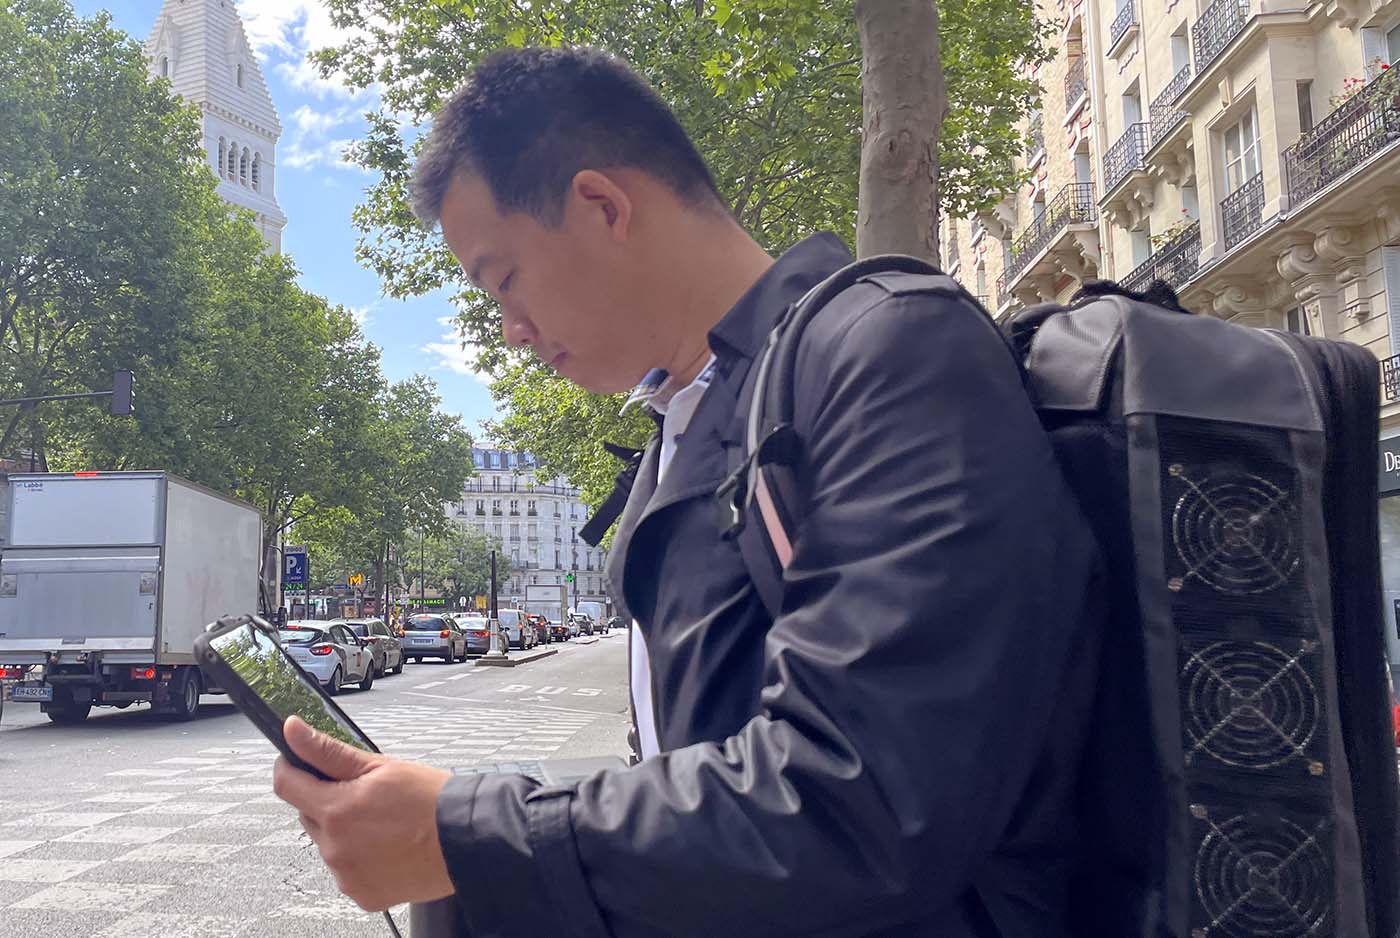 Des tests de mesure de la qualité de service mobile dans Paris.